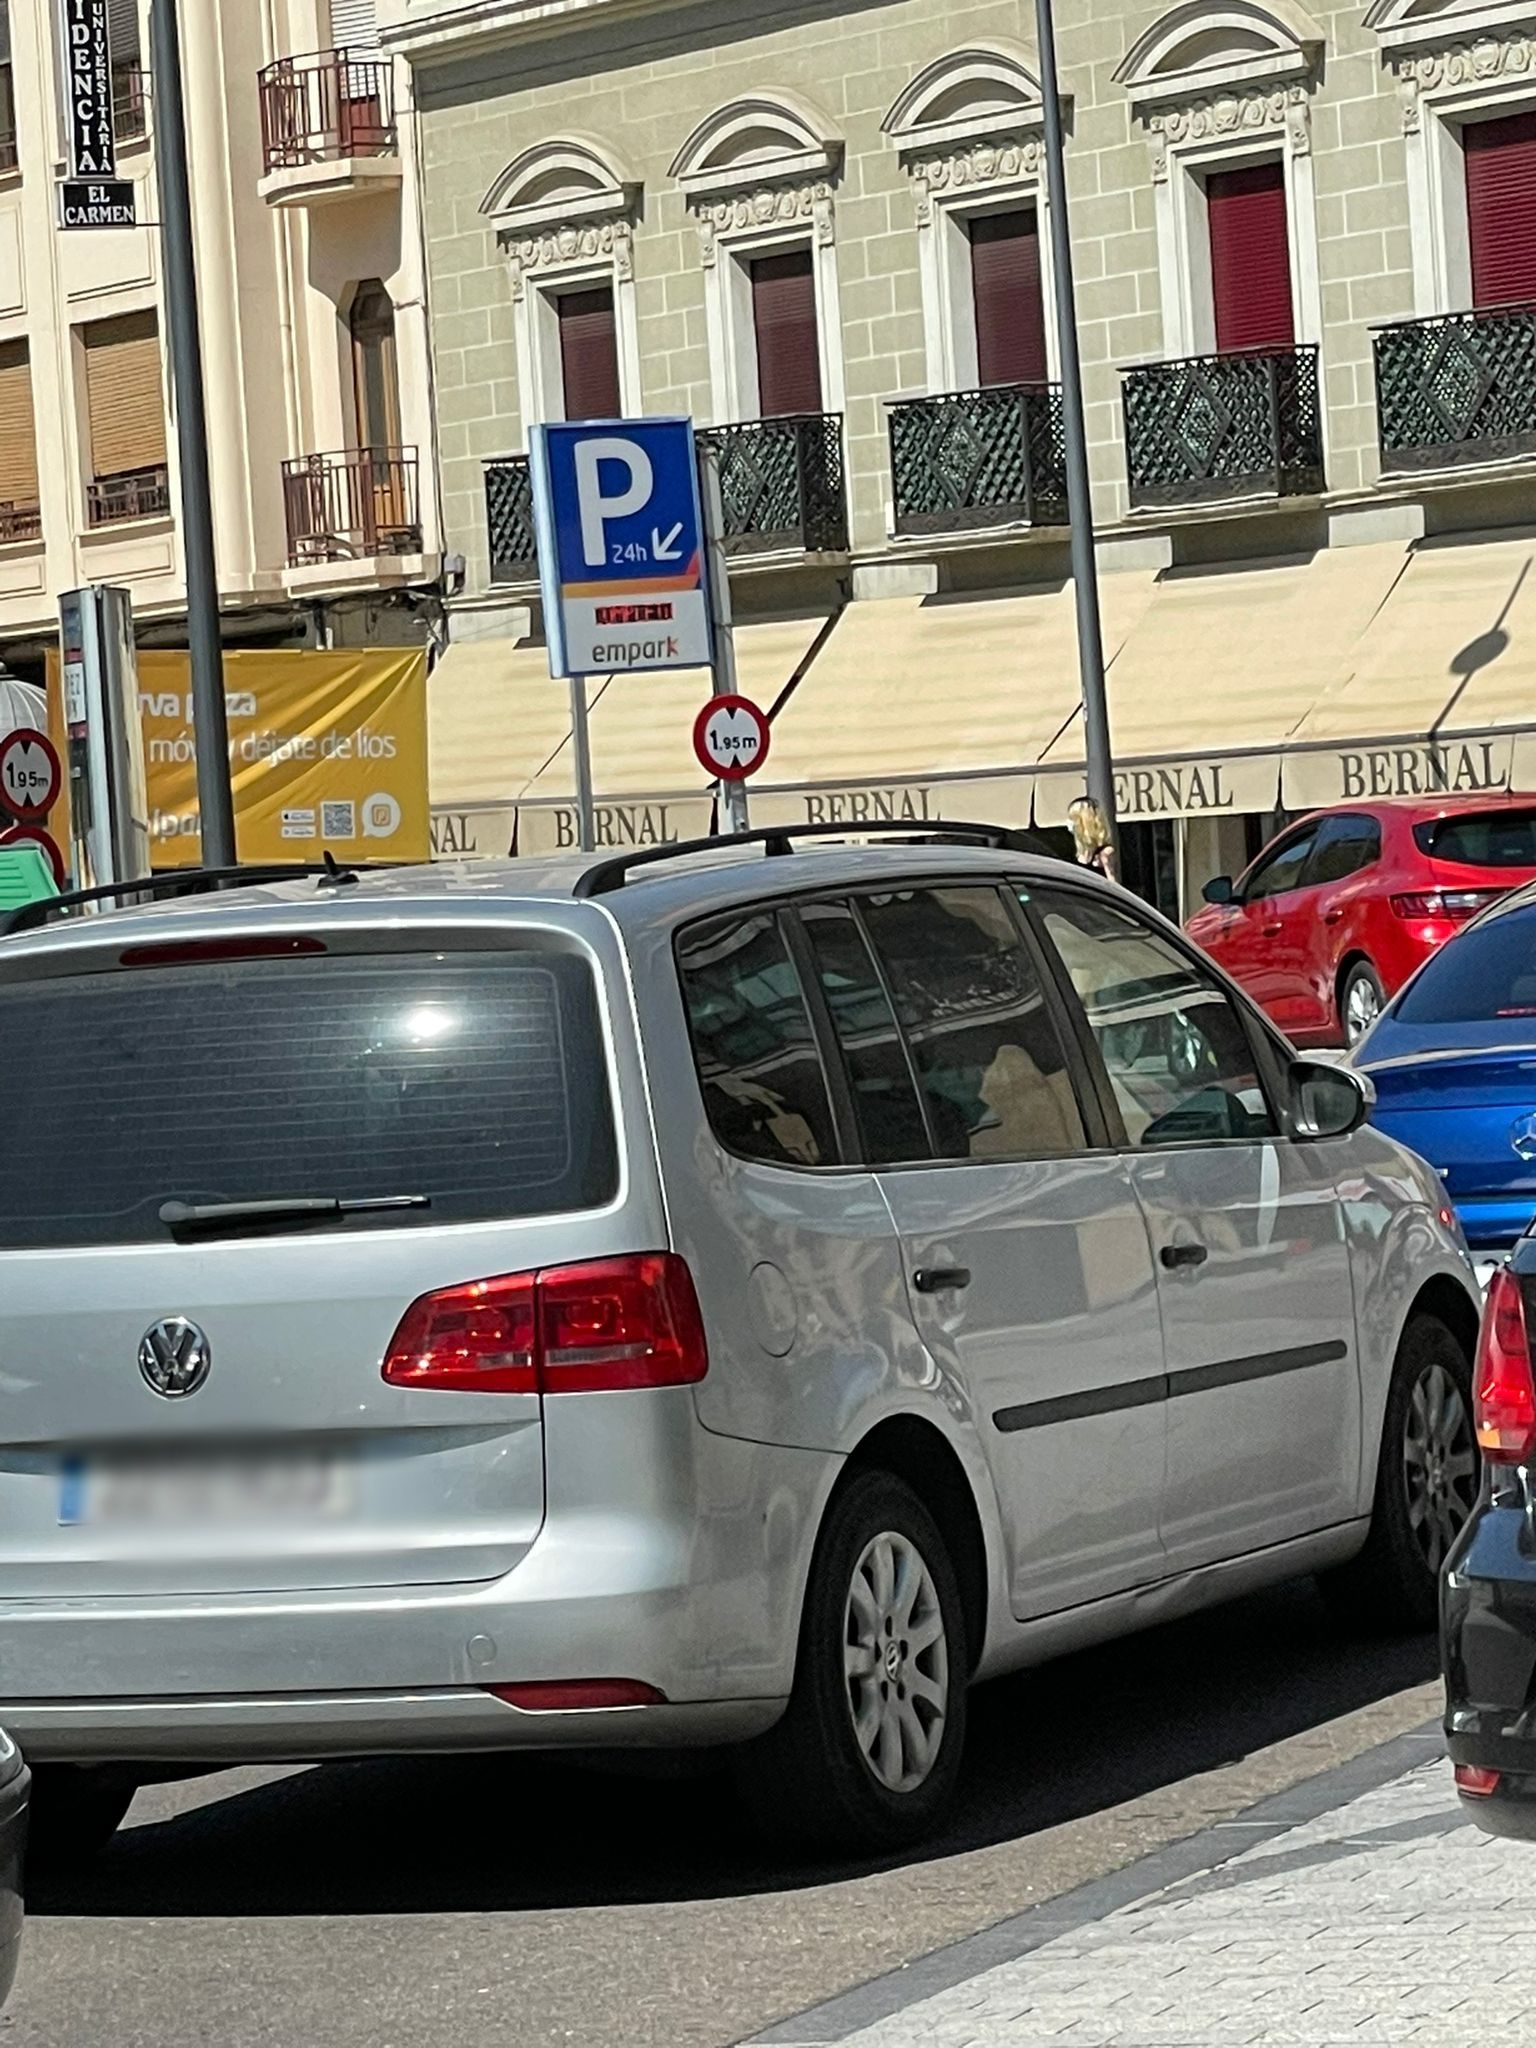 Largas colas para acceder al parking Santa Eulalia (1)